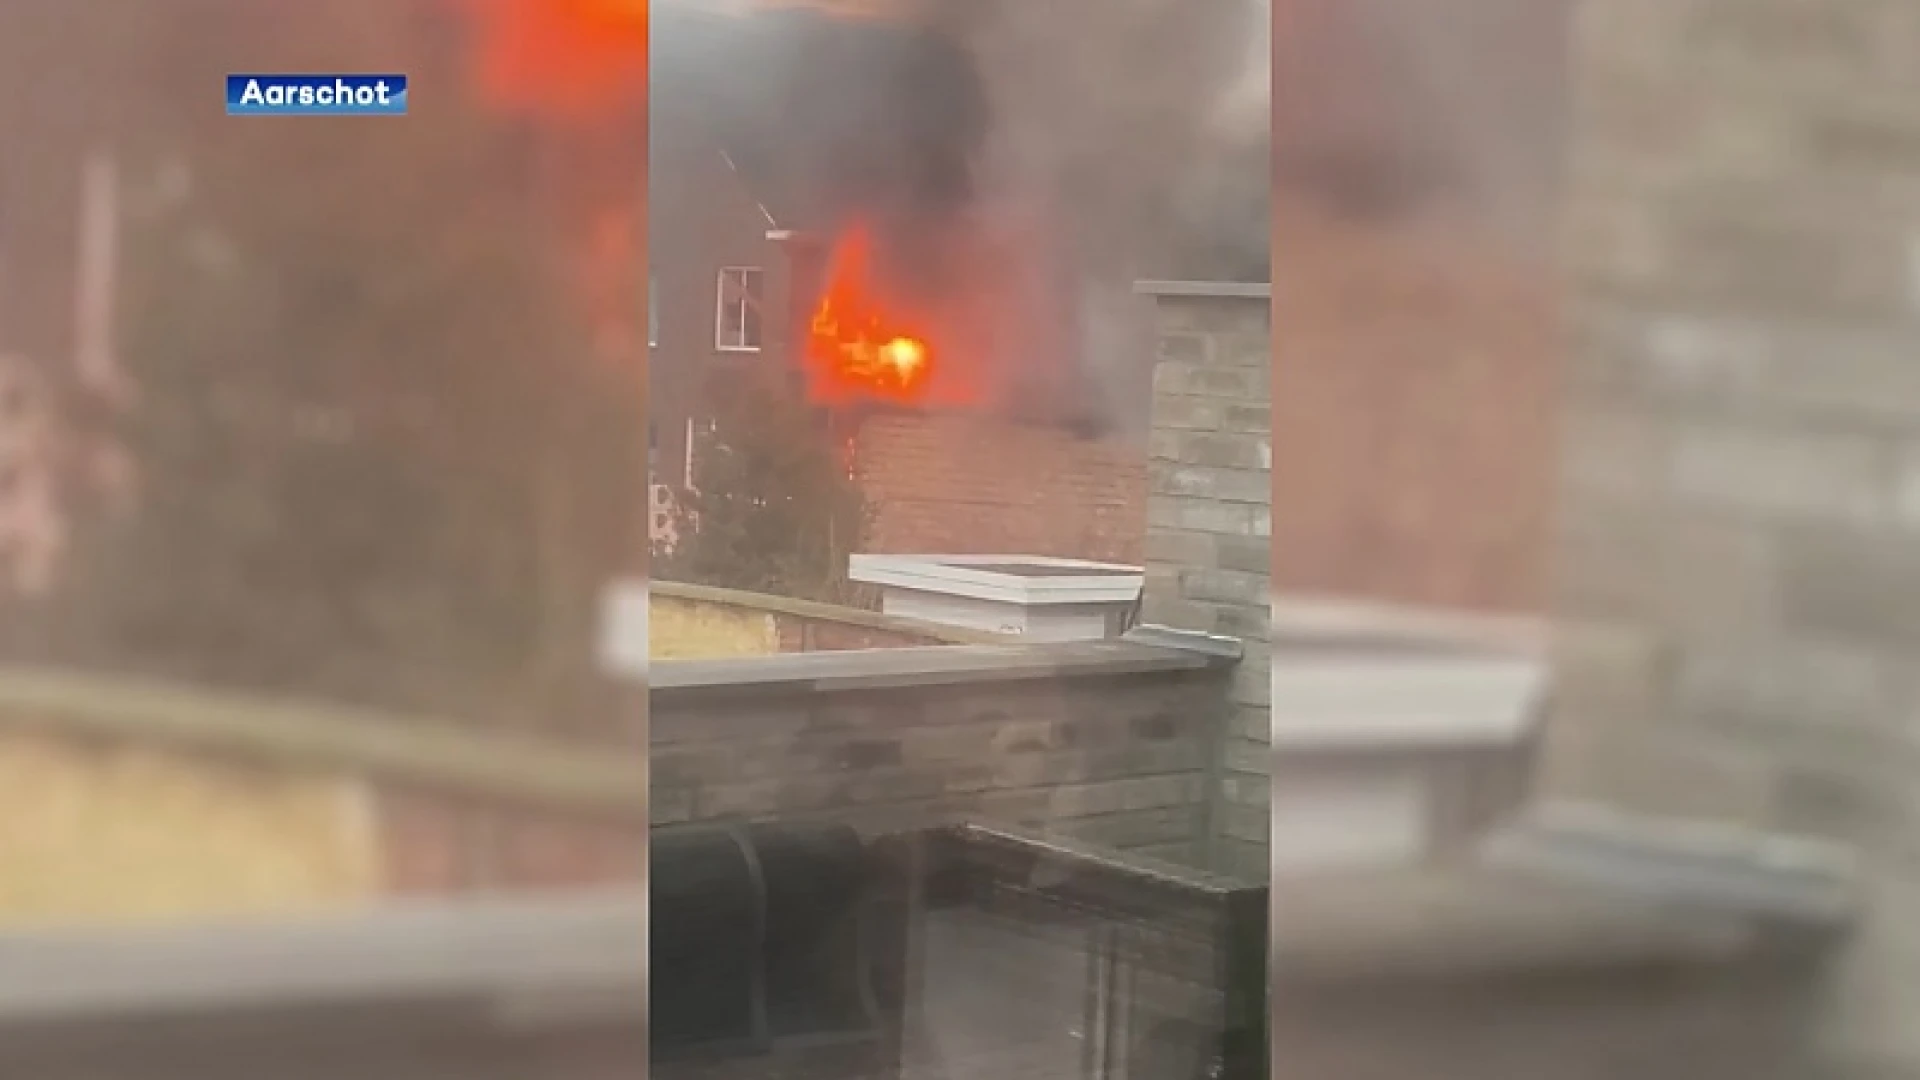 Uitslaande brand bij Duikshop Galicia in Aarschot, perimeter ingesteld